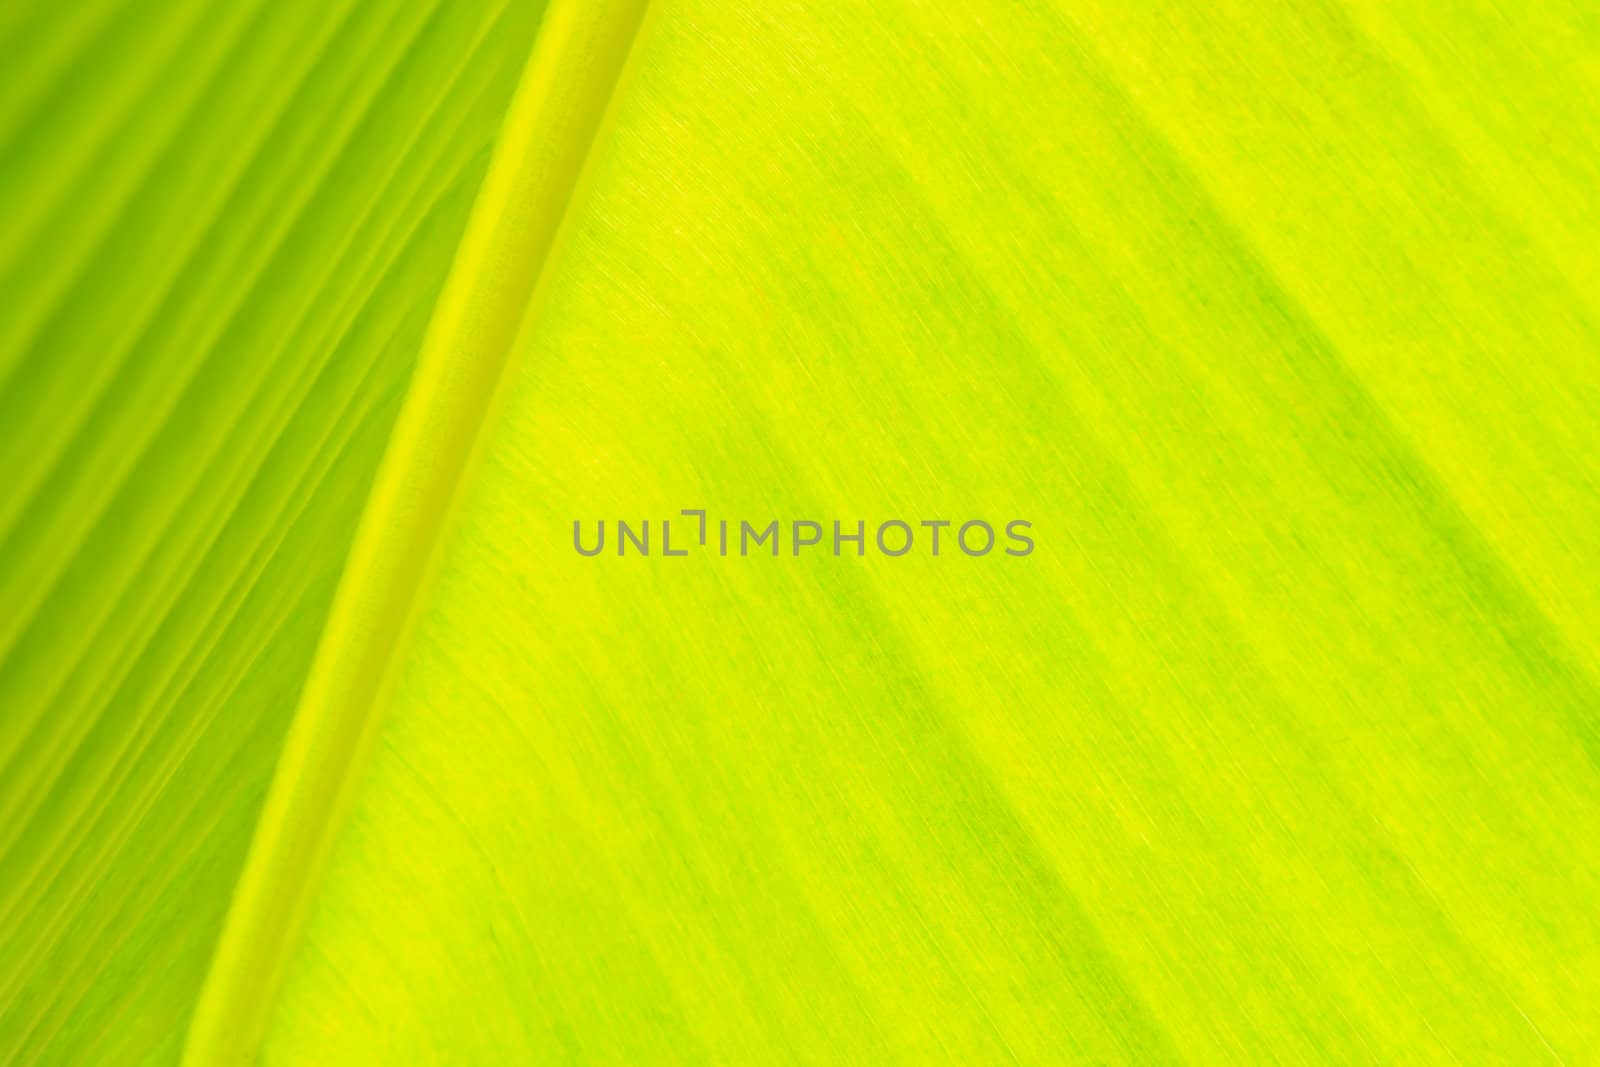 Close-up under banana leaf